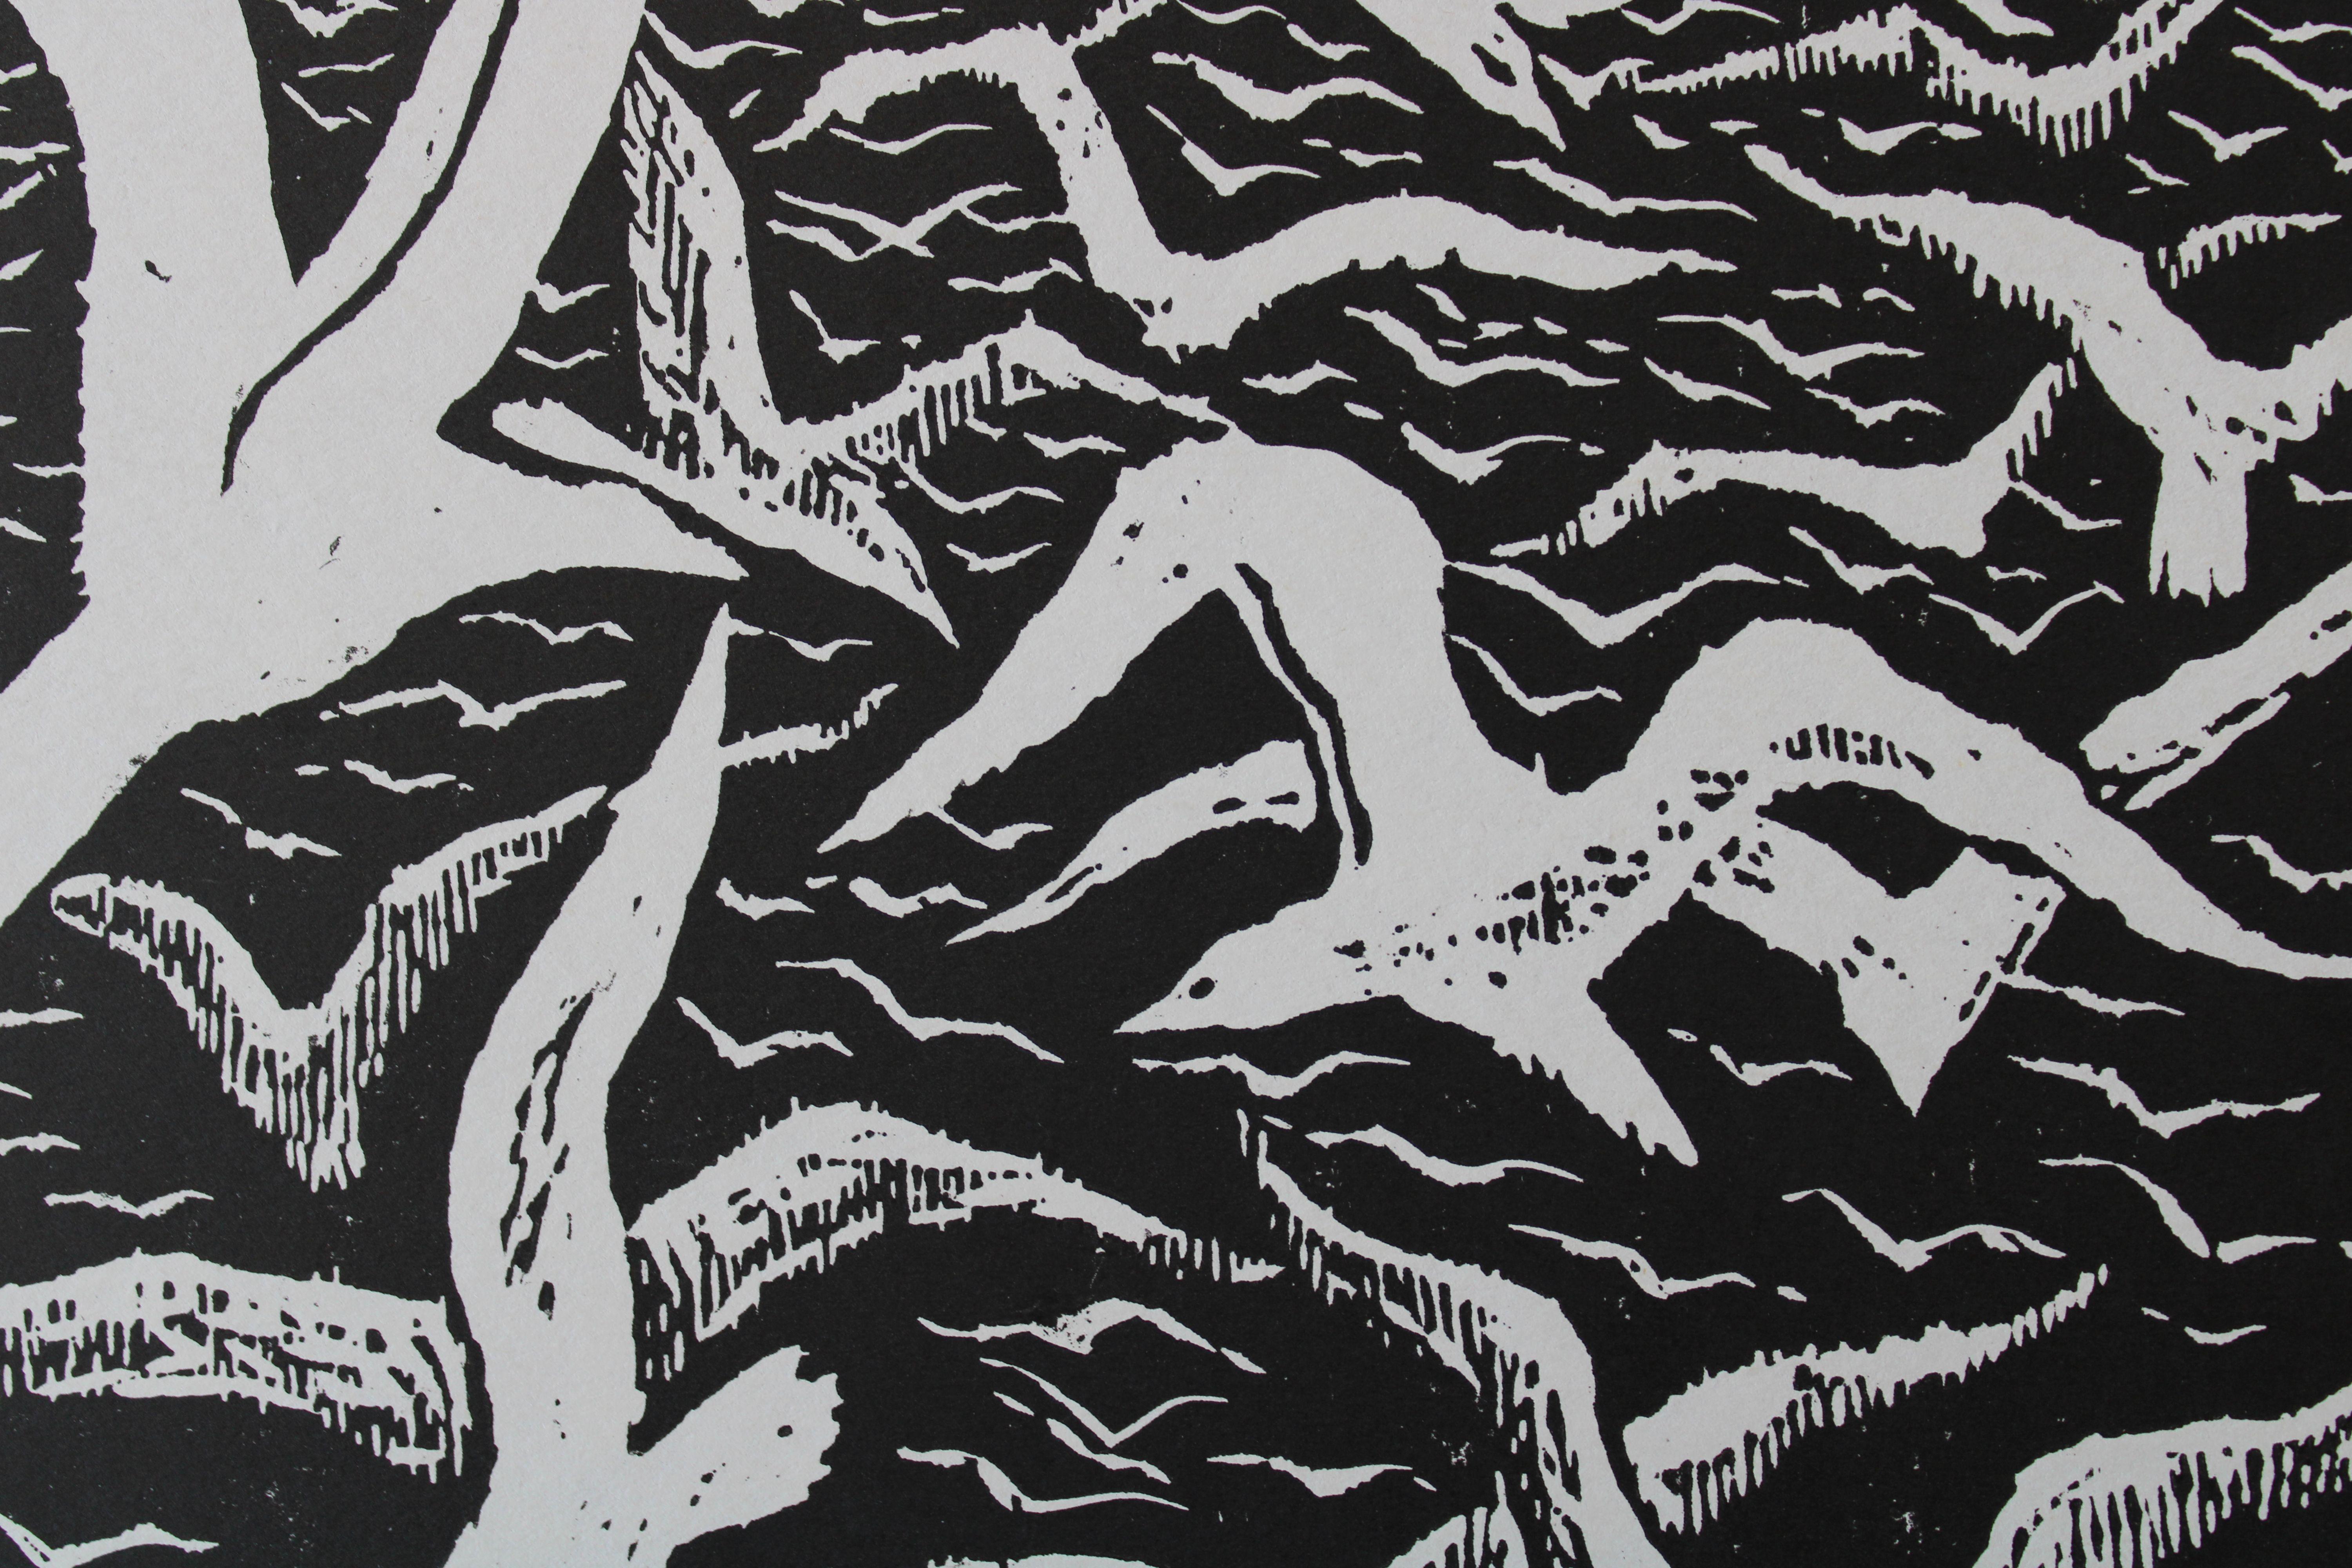 Ein Möwen namens Jonathan  1973. Papier, Linolschnitt, 32x30 cm (Surrealismus), Print, von Nikolai Uvarov 